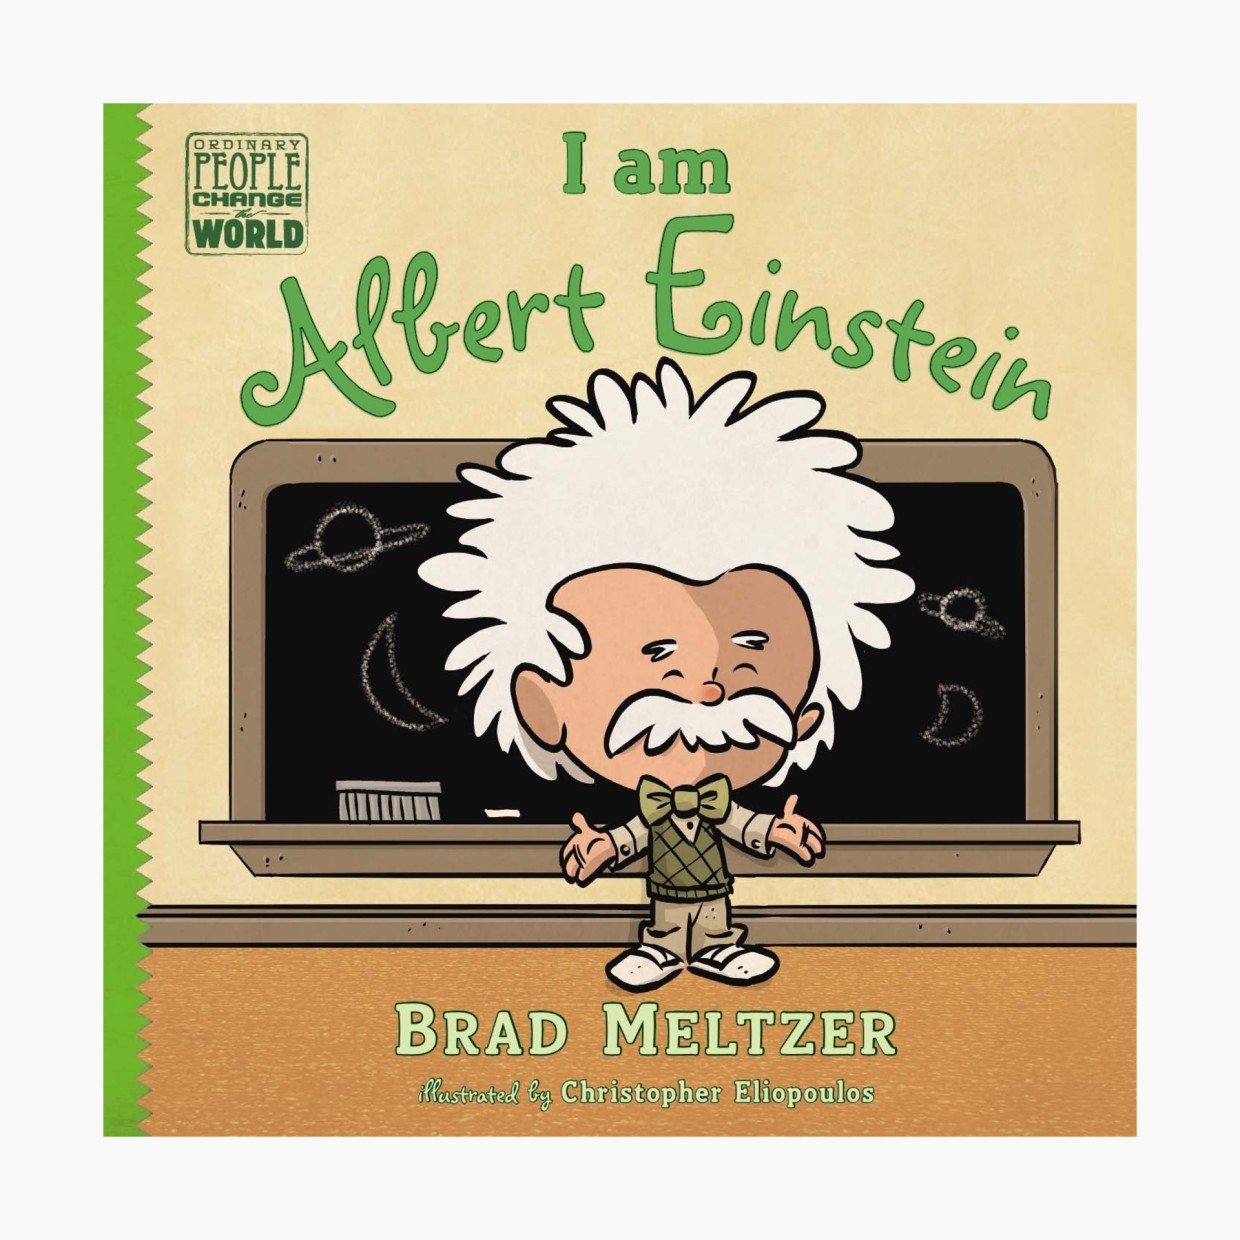 I am Albert Einstein.